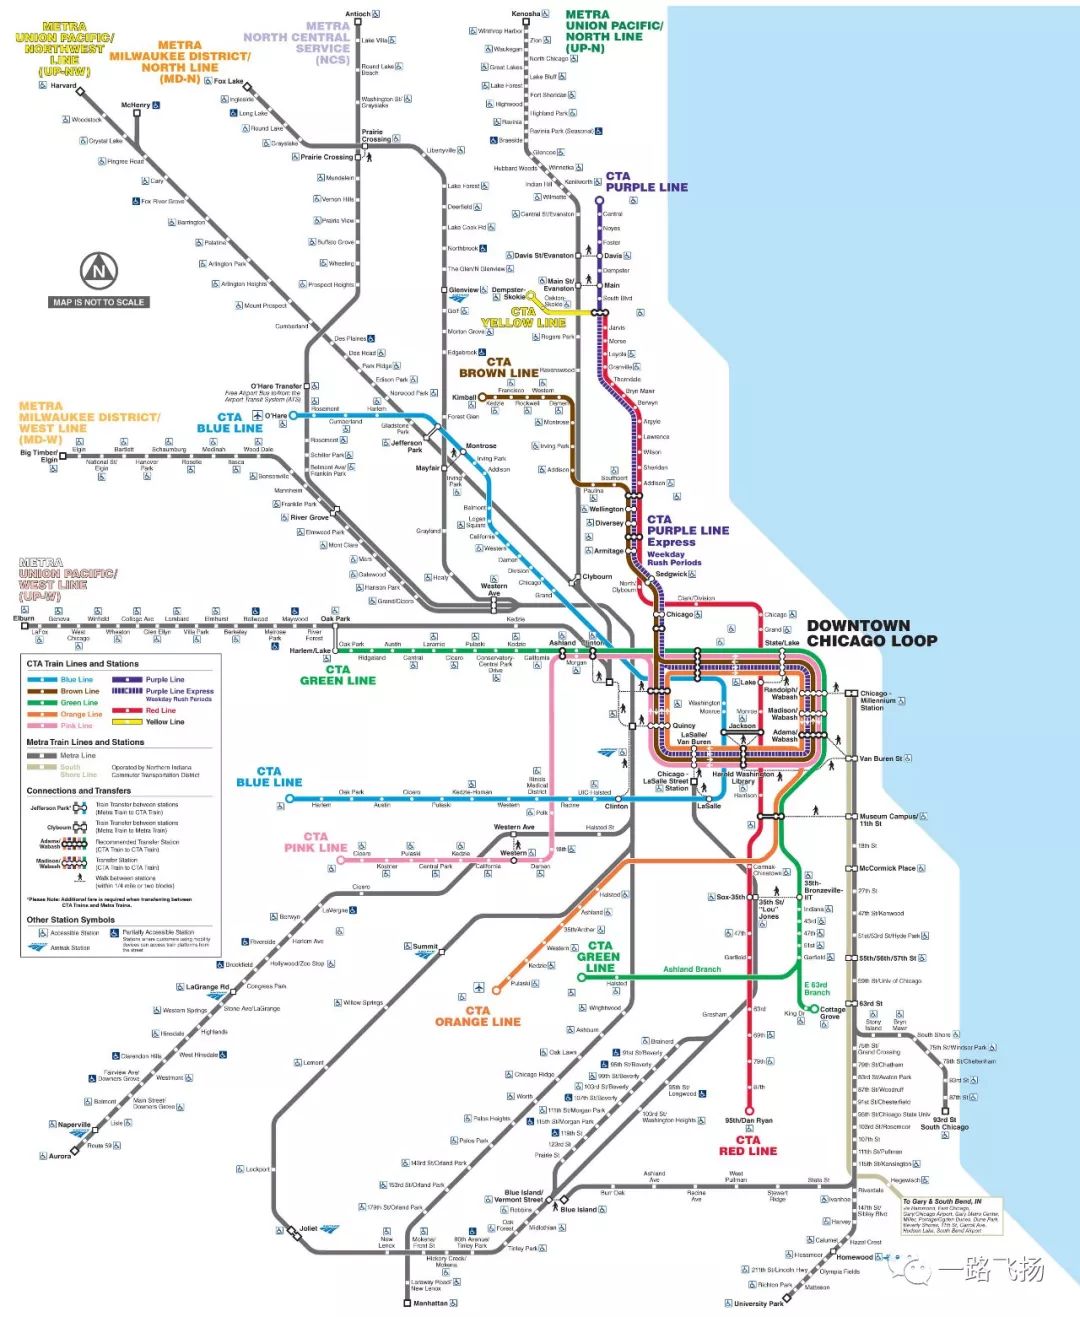 芝加哥奥黑尔国际机场距离芝加哥市中心约25公里,地铁蓝线(blue line